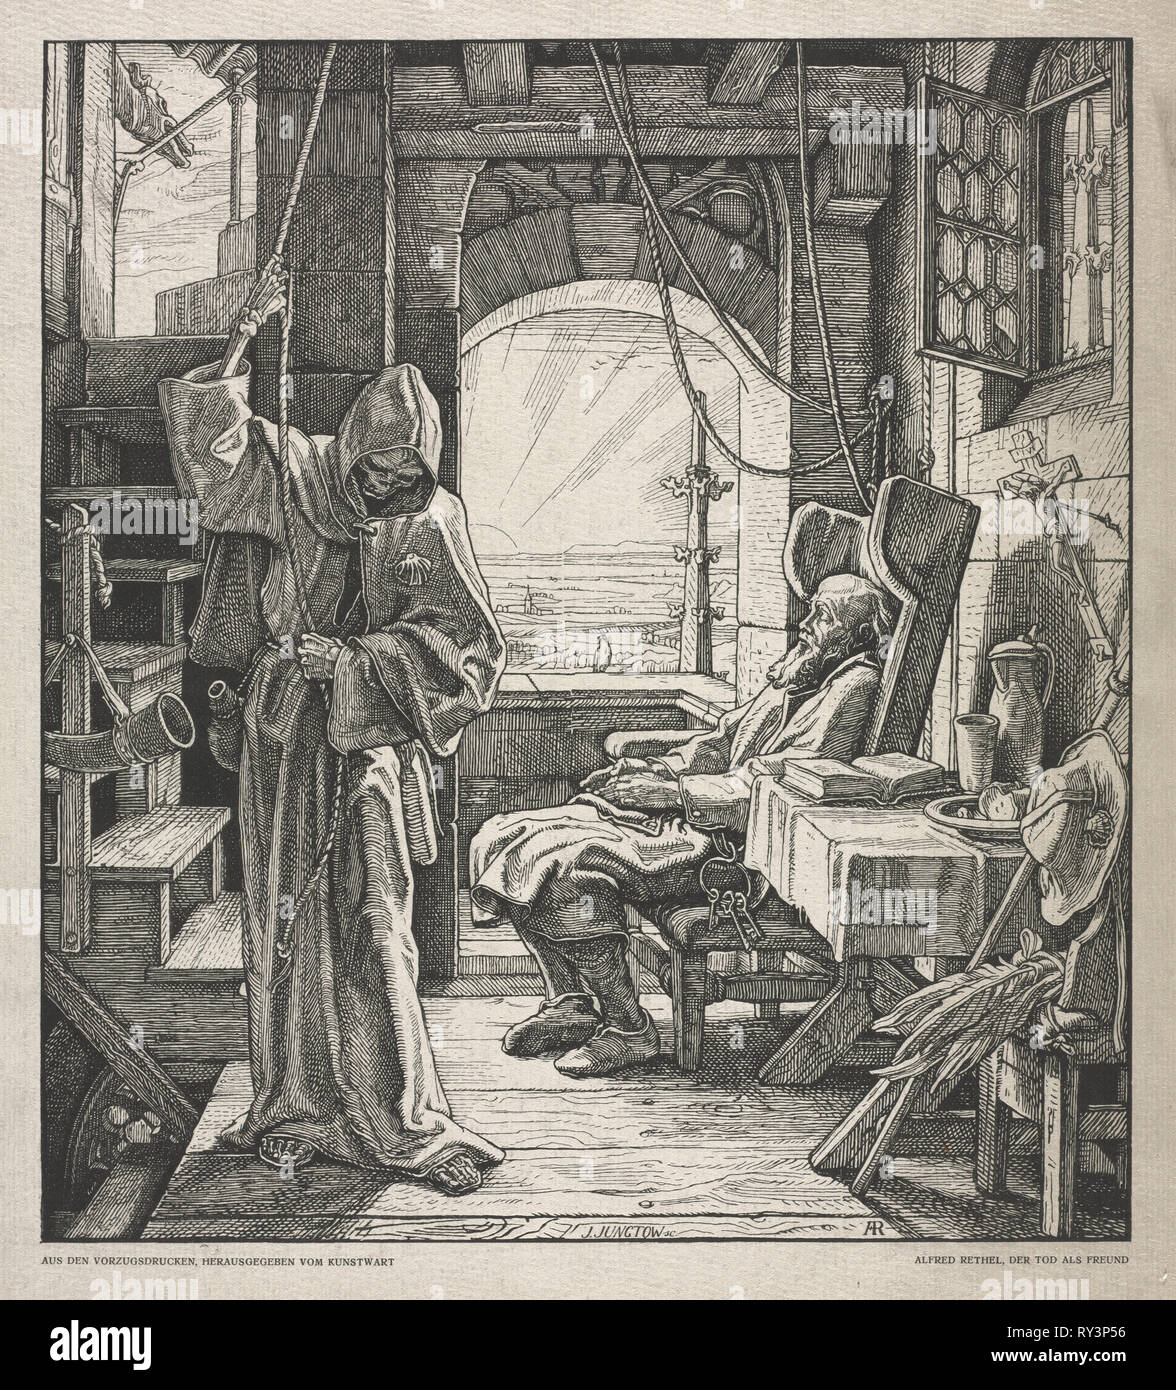 La danse de mort : la mort comme un ami, 1850. Alfred Rethel (allemand, 1816-1859). Gravure sur bois Banque D'Images